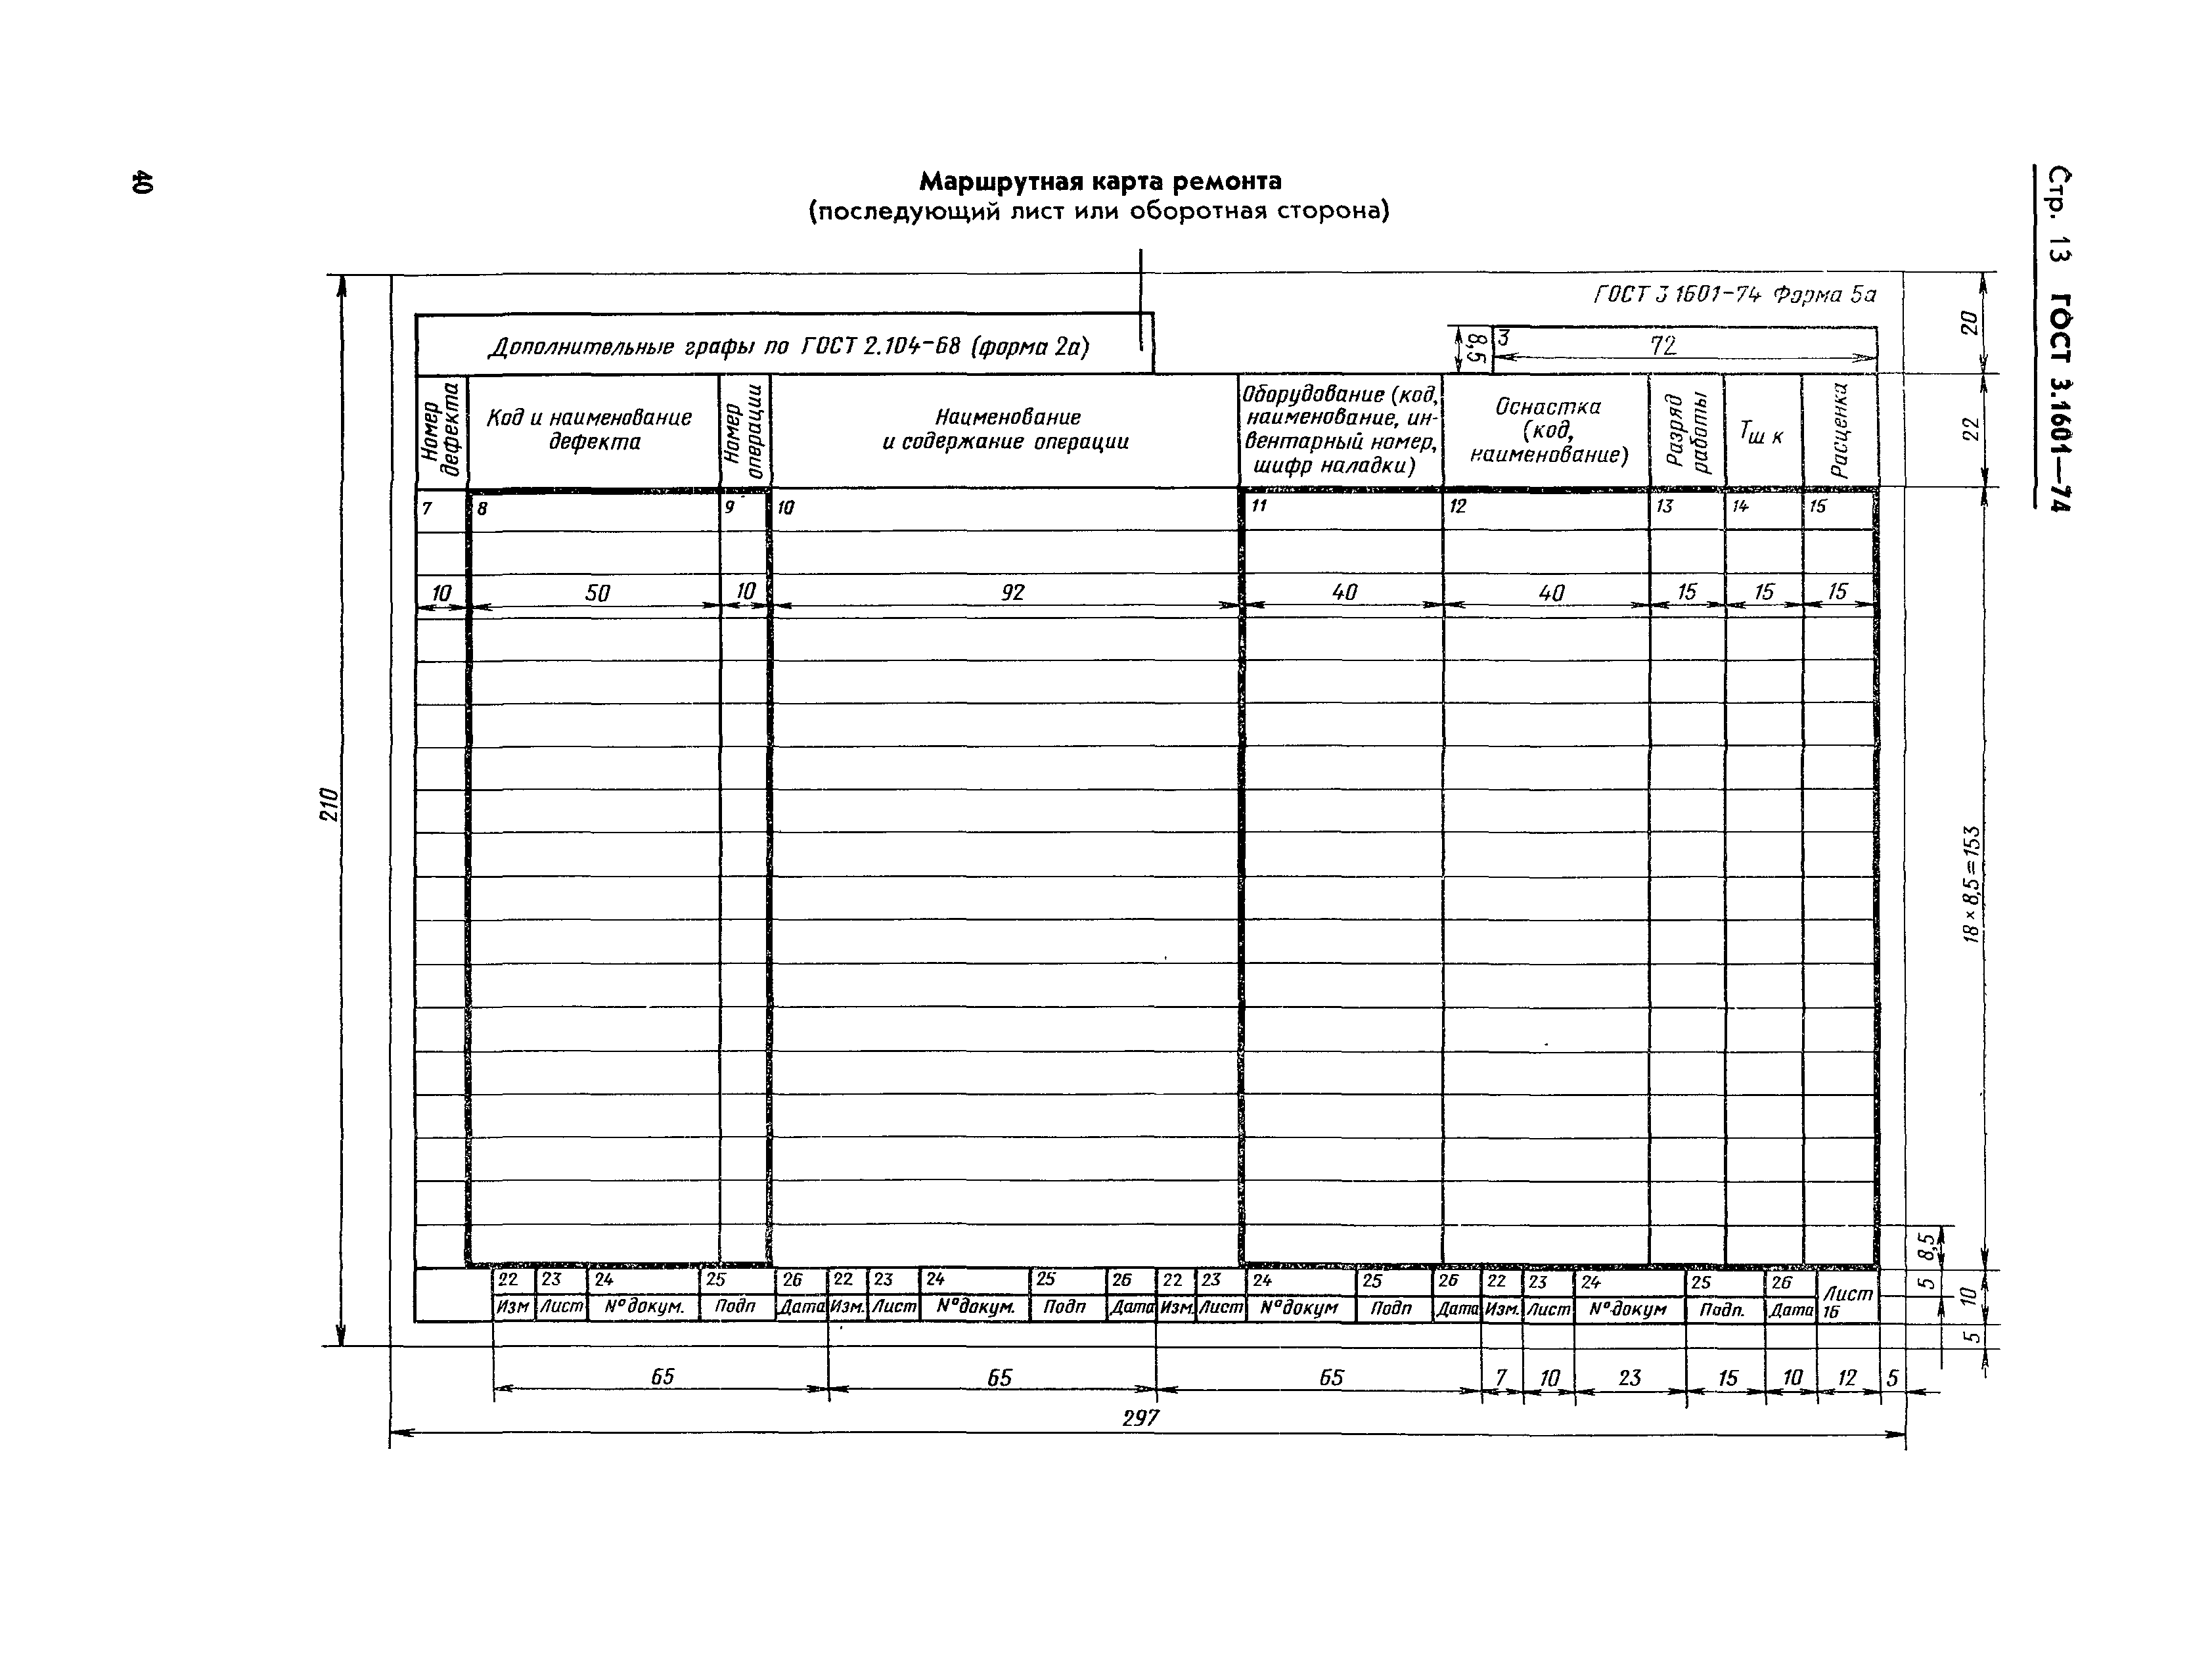 Карта ремонта оборудования